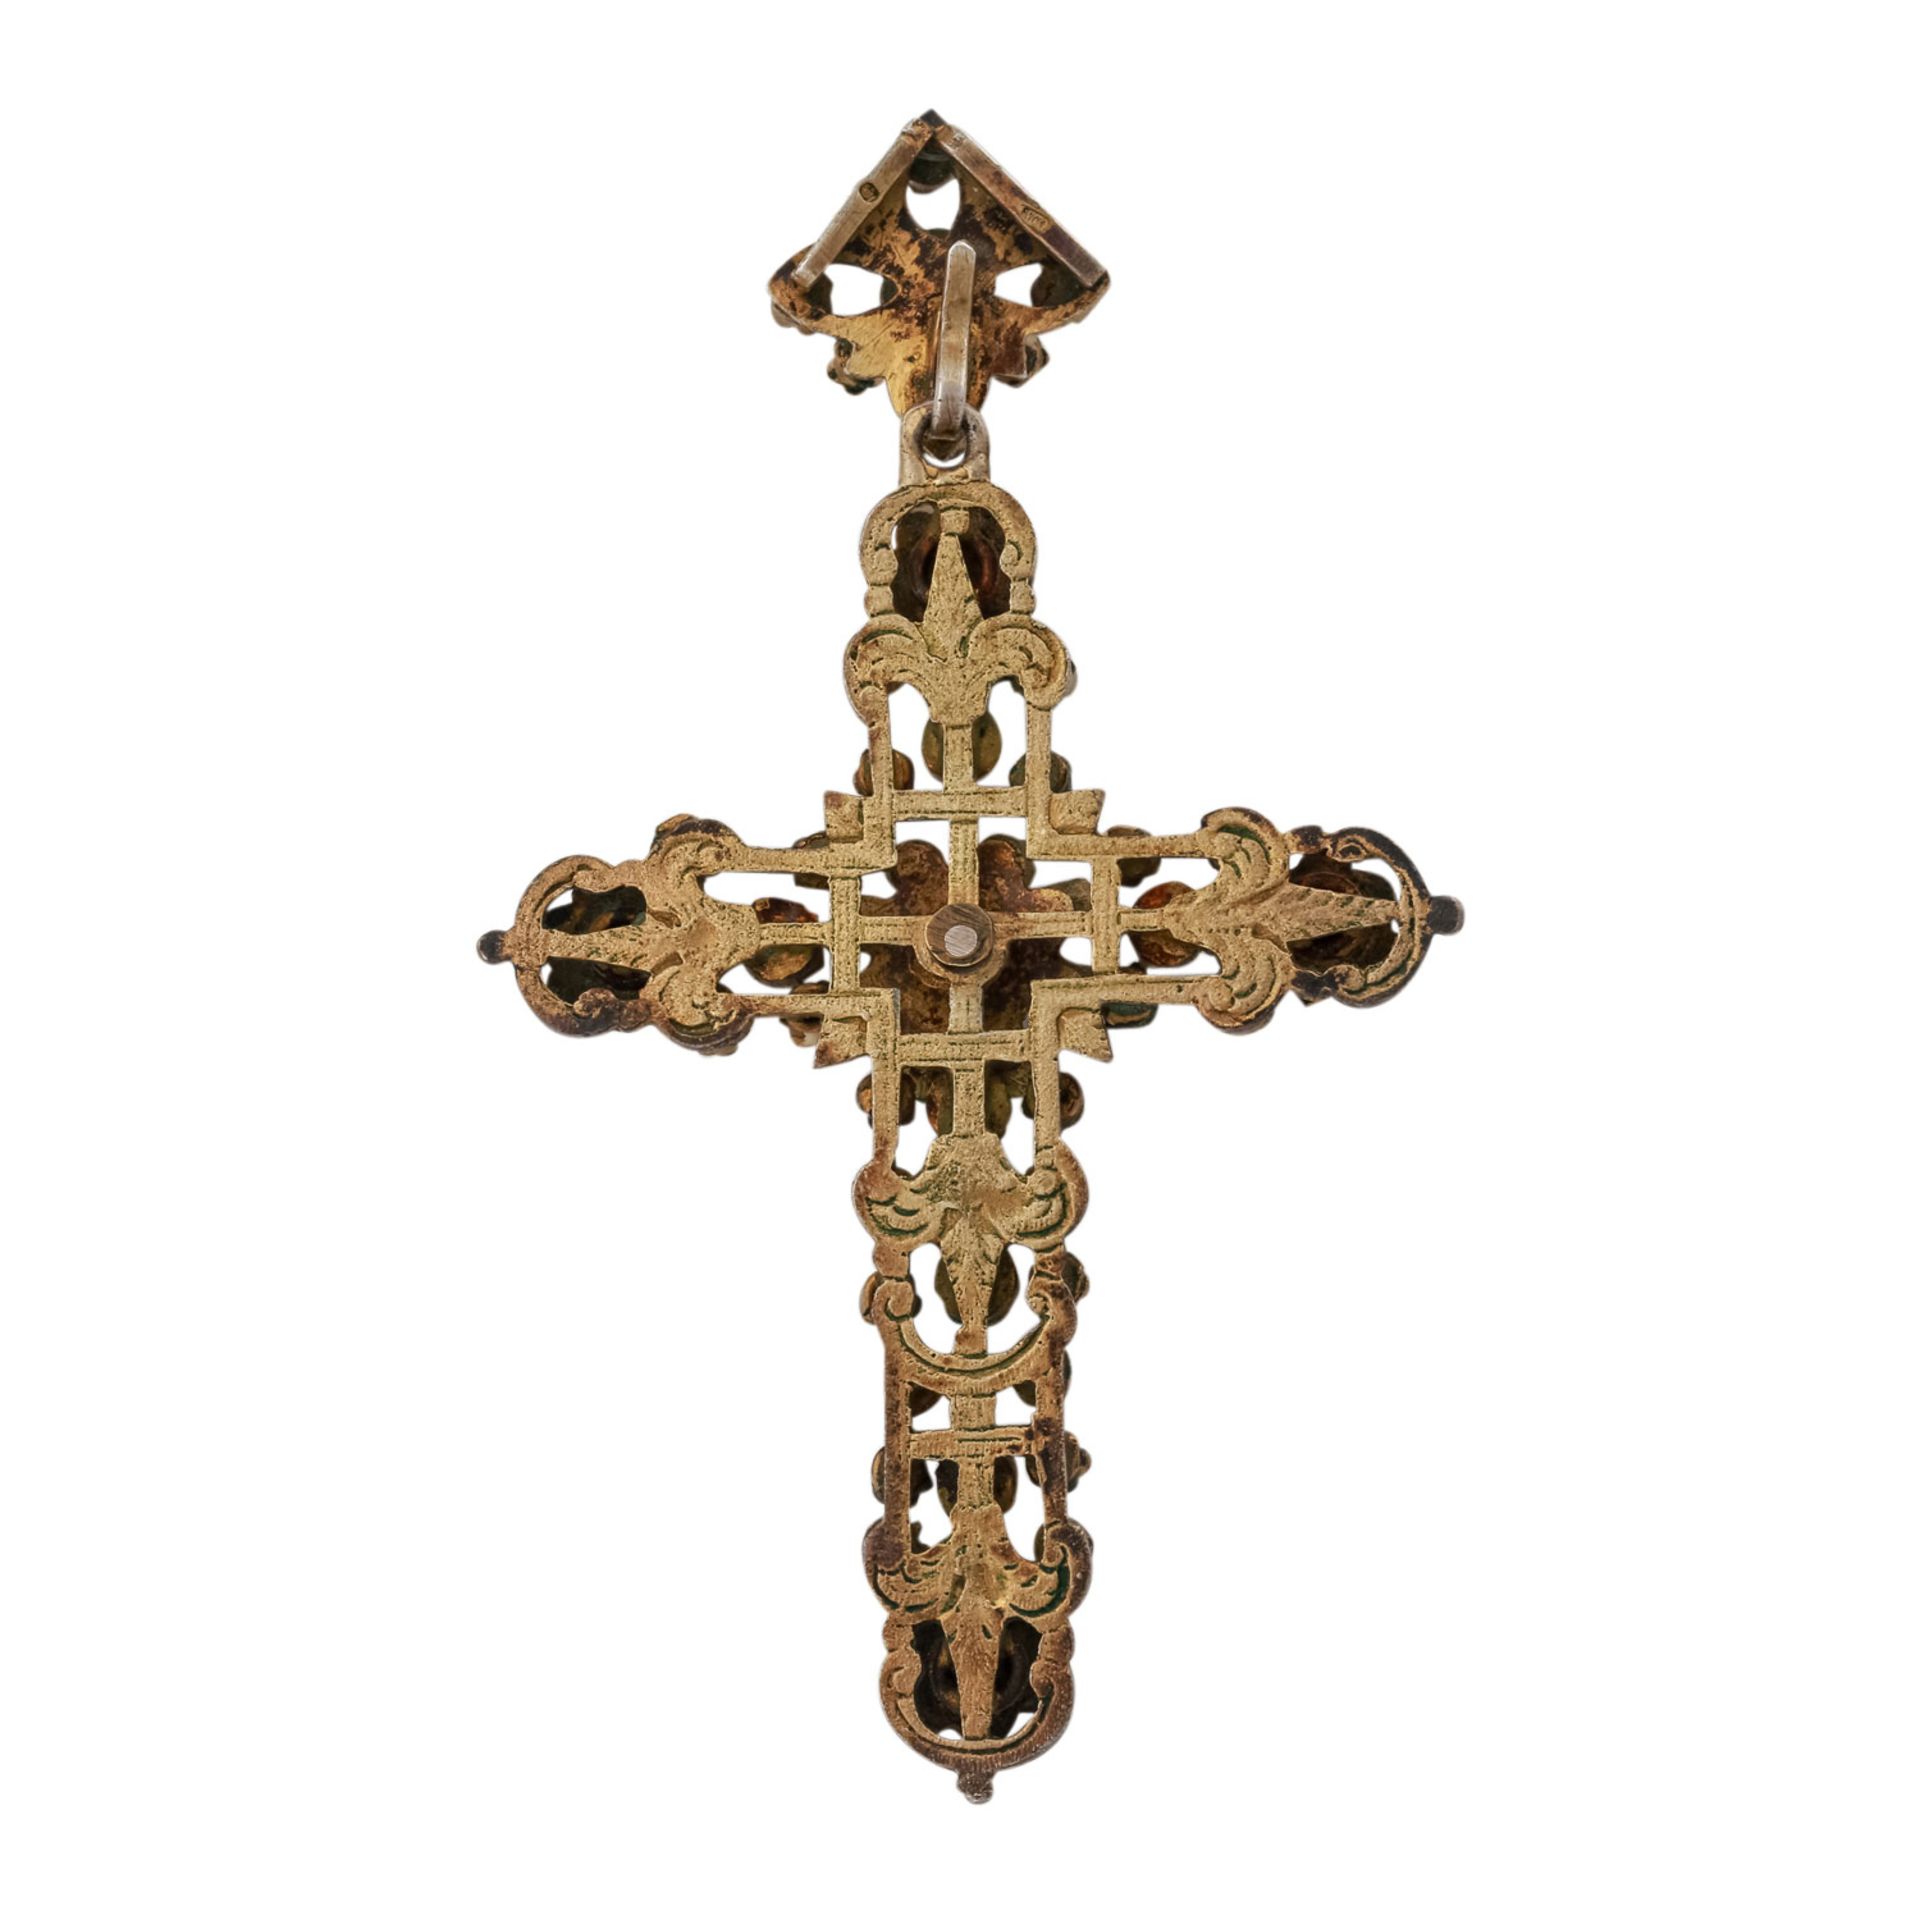 Siebenbürger Kreuz mit Edelsteinen,Granat, Türkis, Silber vergoldet, tlw. emailliert, L: ca. 7,8 cm, - Bild 3 aus 5